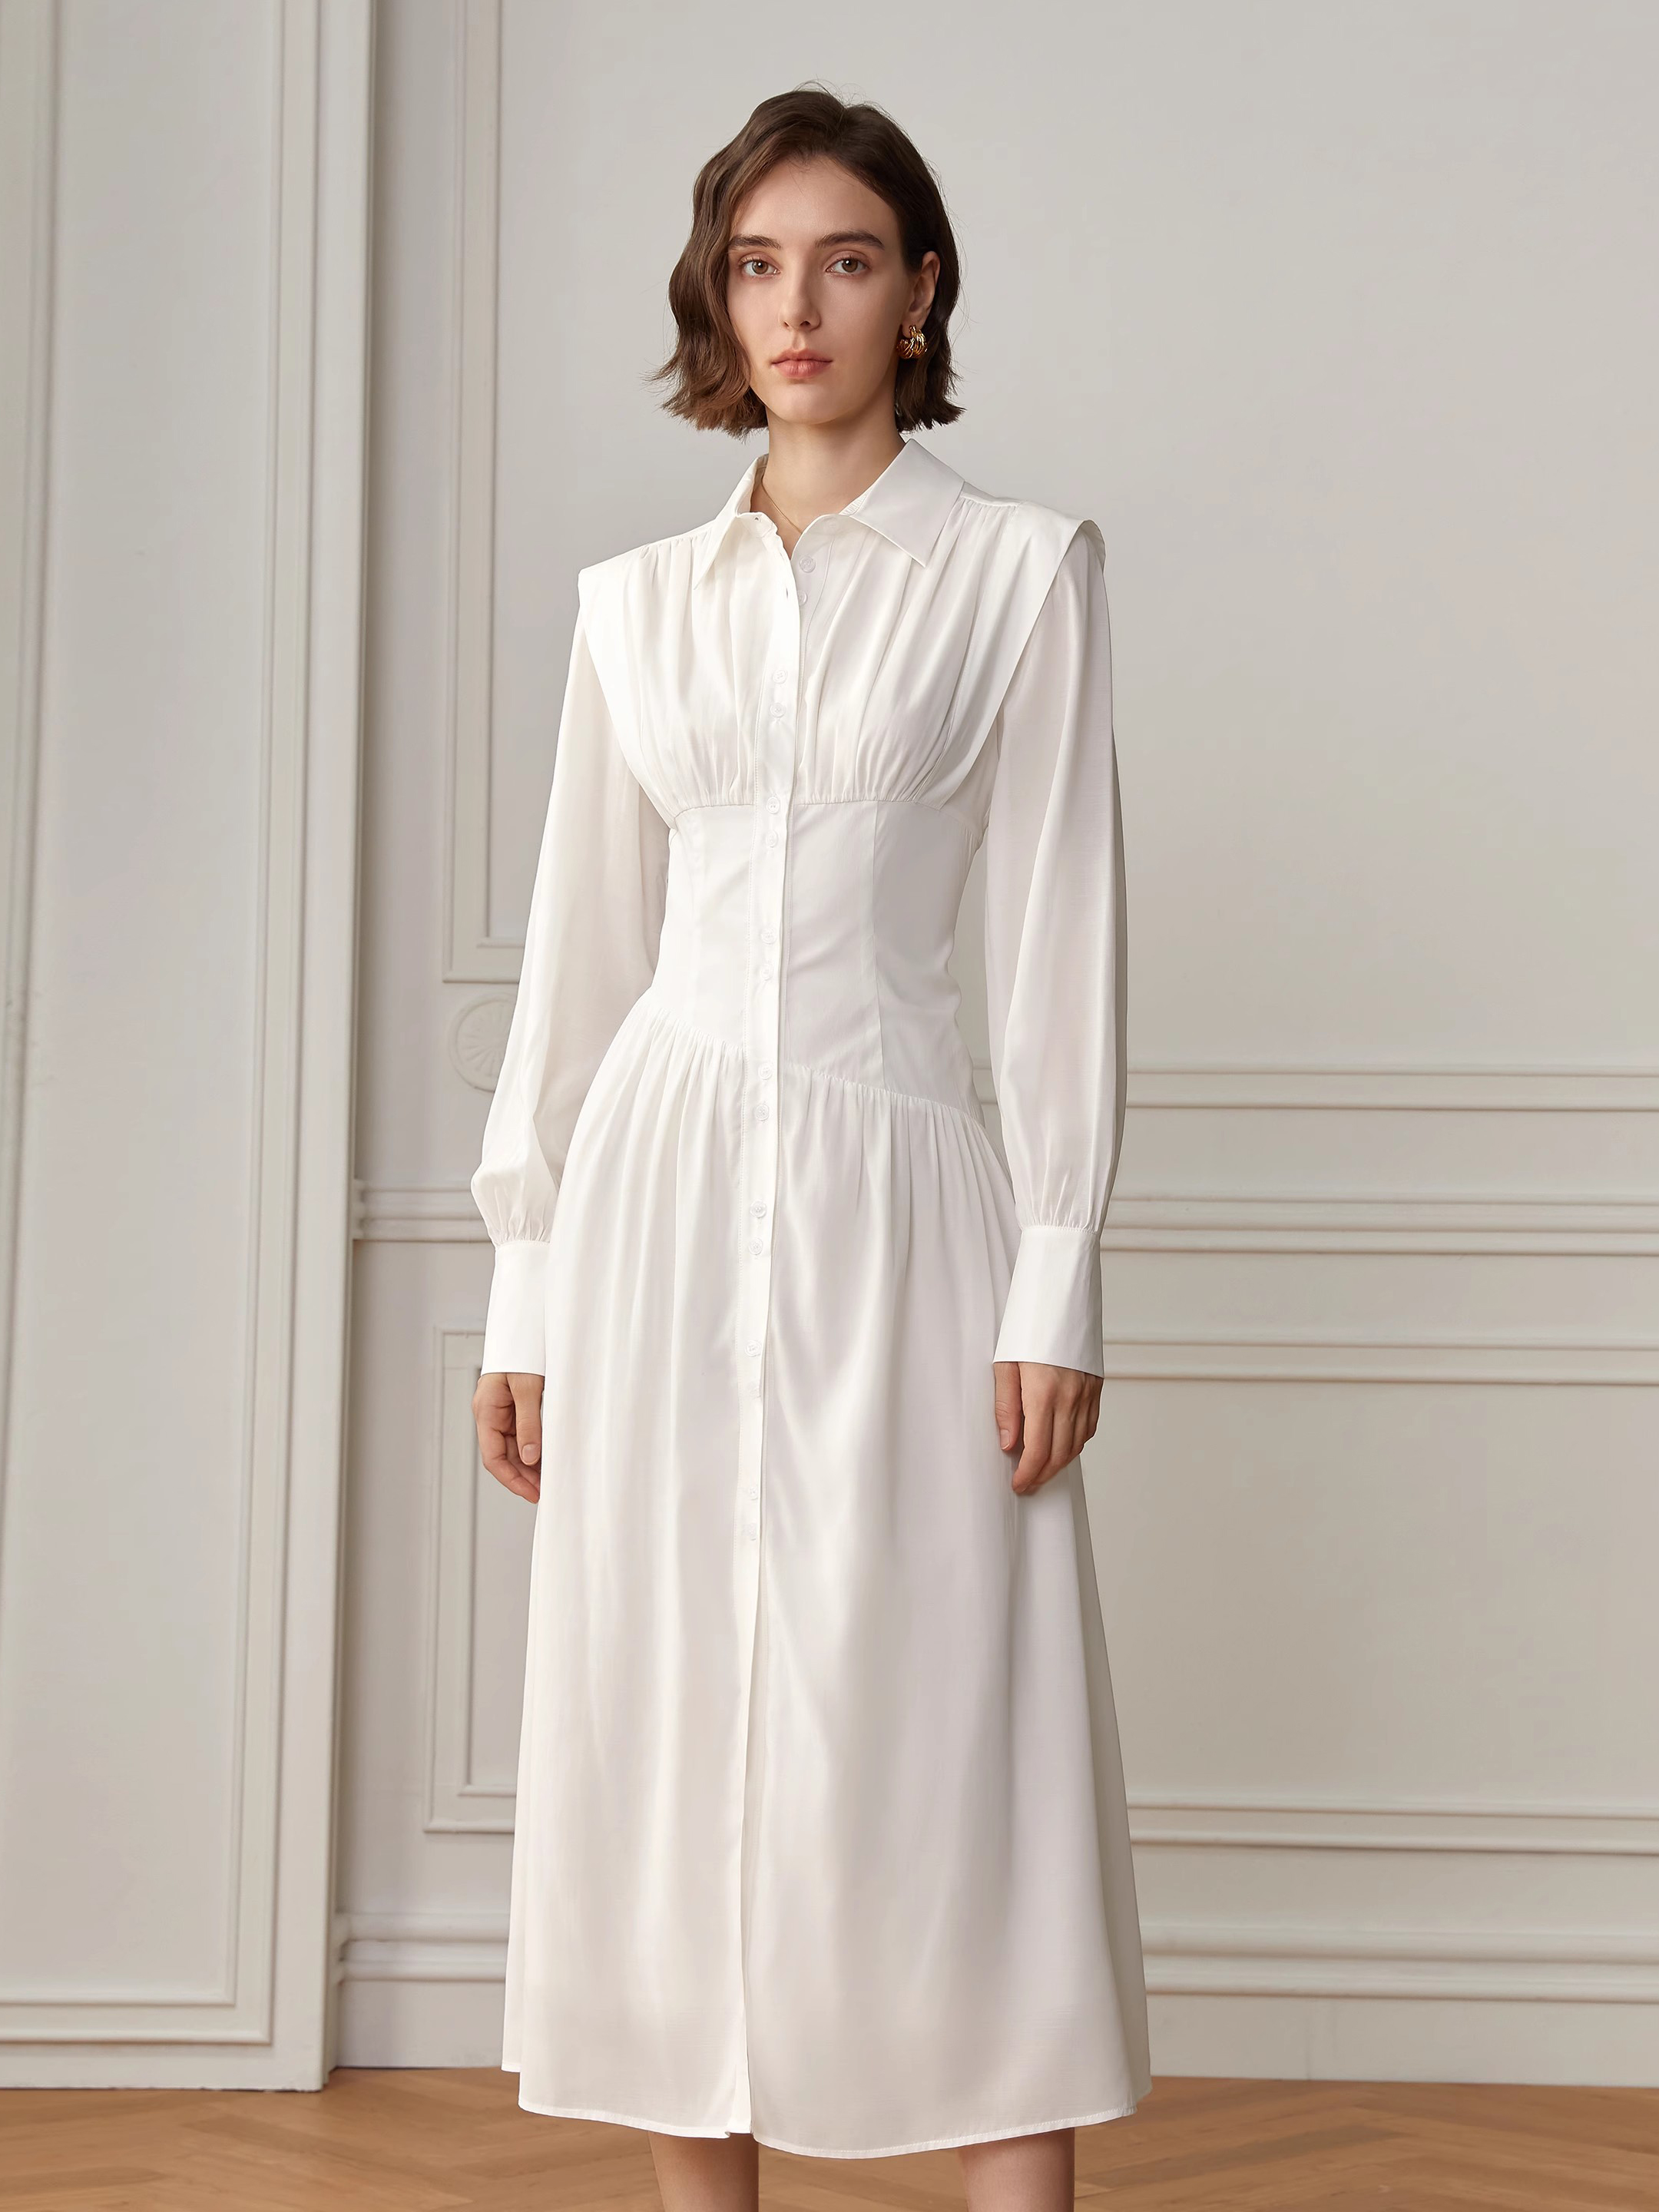 Designers de vestidos femininos com irregularidade de camisa branca